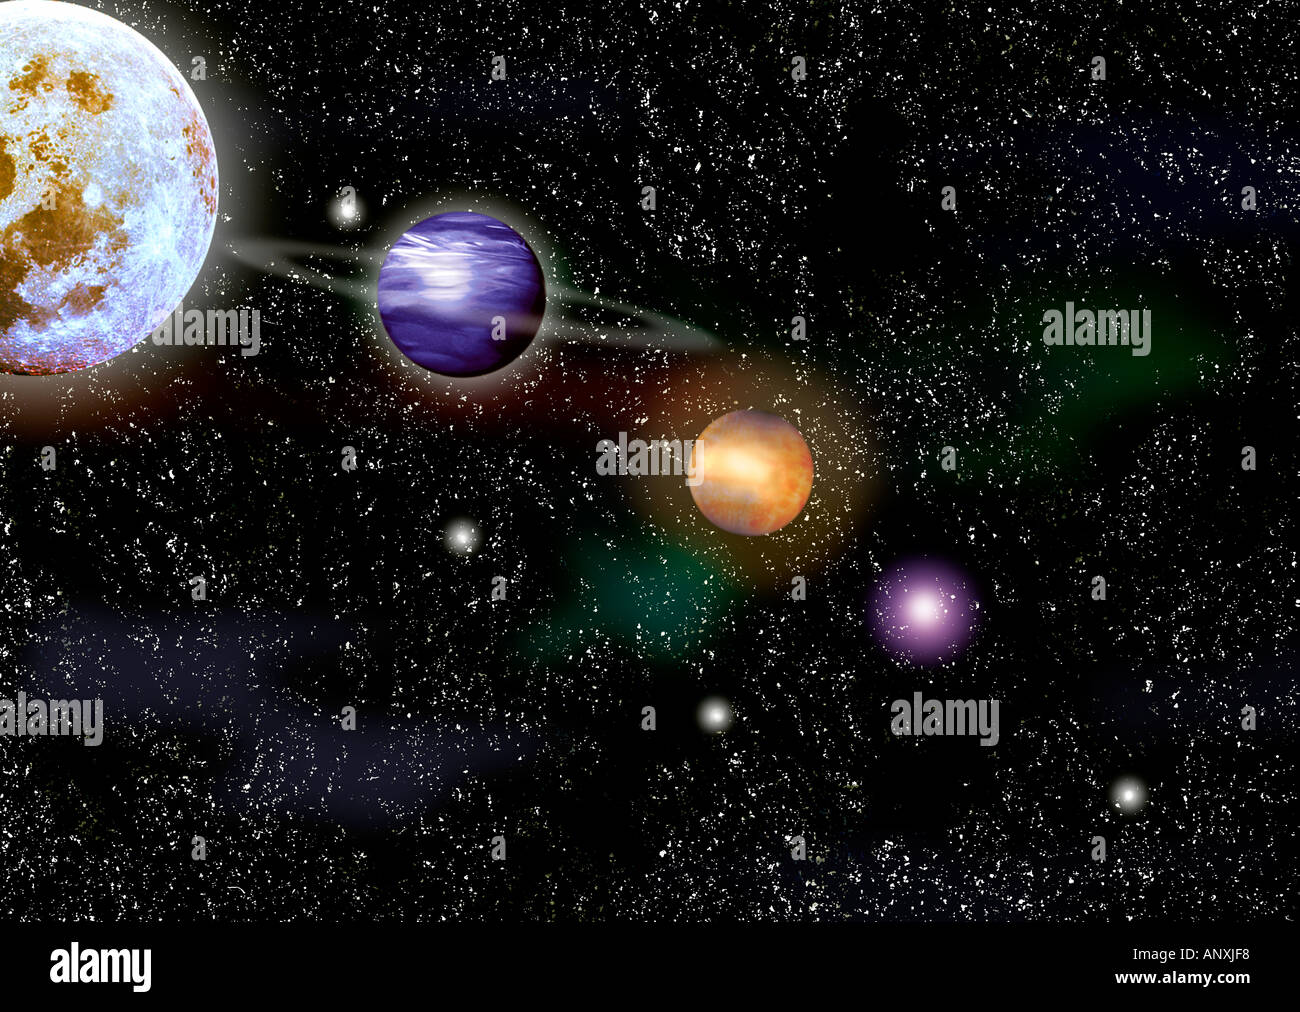 Raum Kosmos Foto Darstellung Planeten Mond und Sterne Illustration Grafik  Planeten Weltraum Kosmos Sterne Sonnen Universum Stockfotografie - Alamy